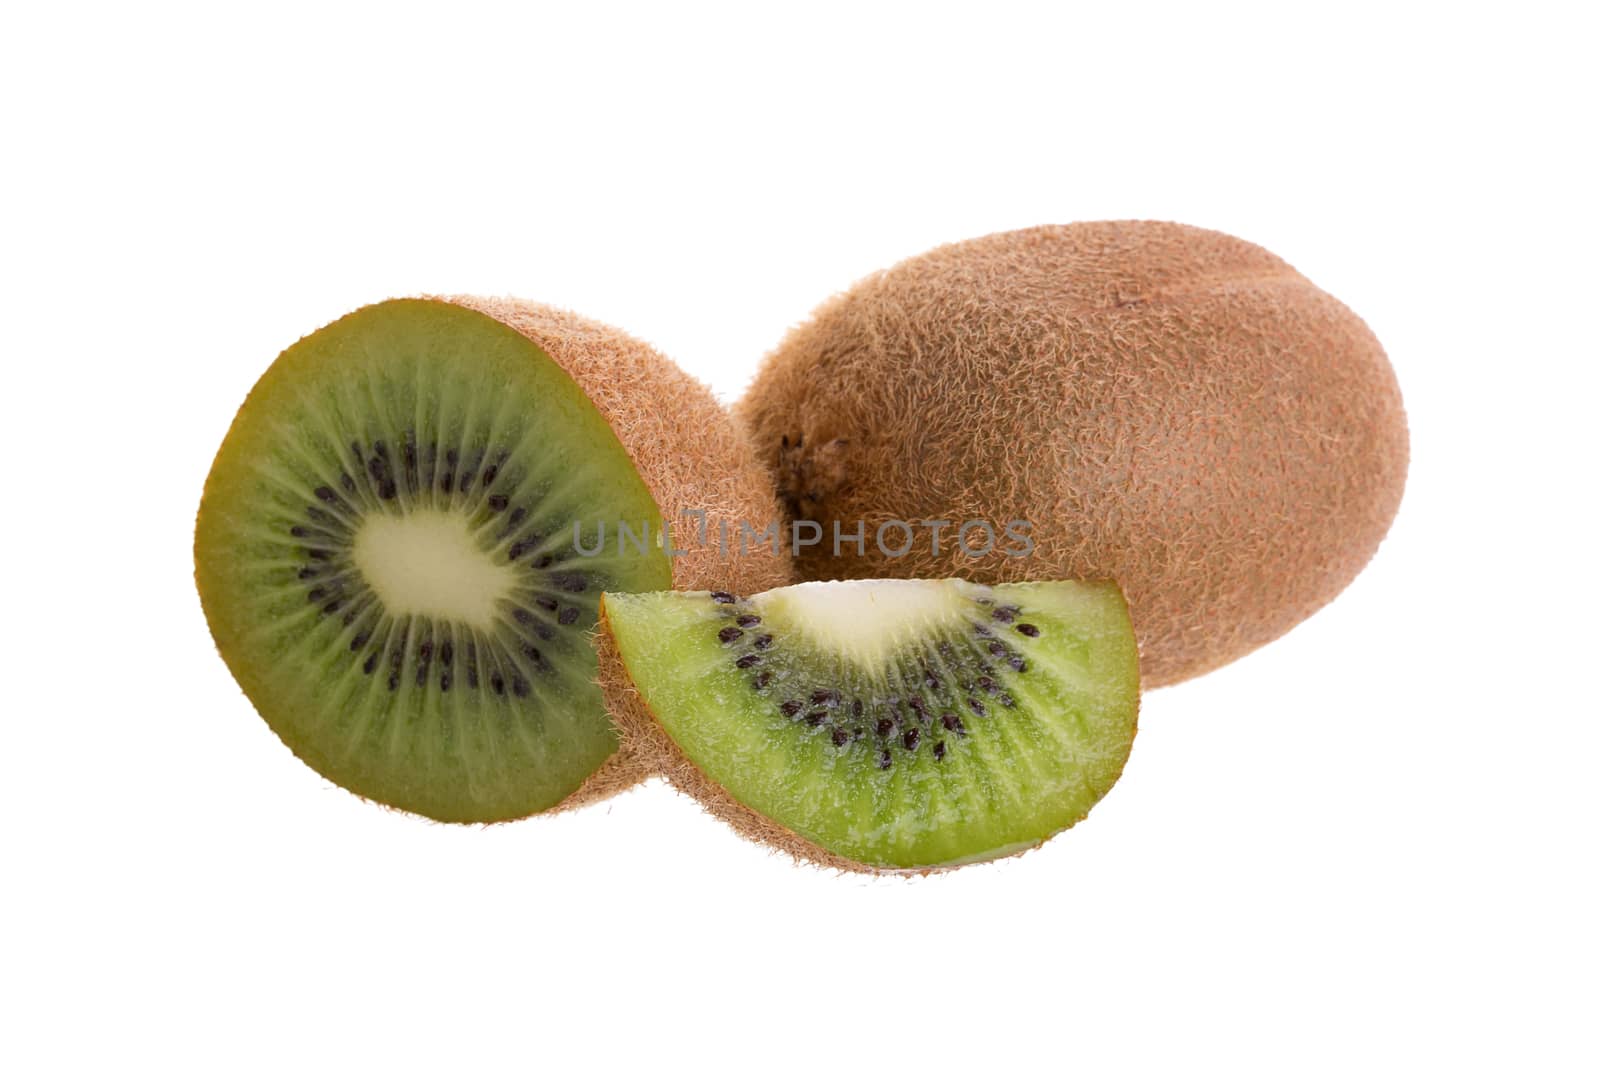 Kiwi fruit and kiwi sliced isolated on a white background by kaiskynet